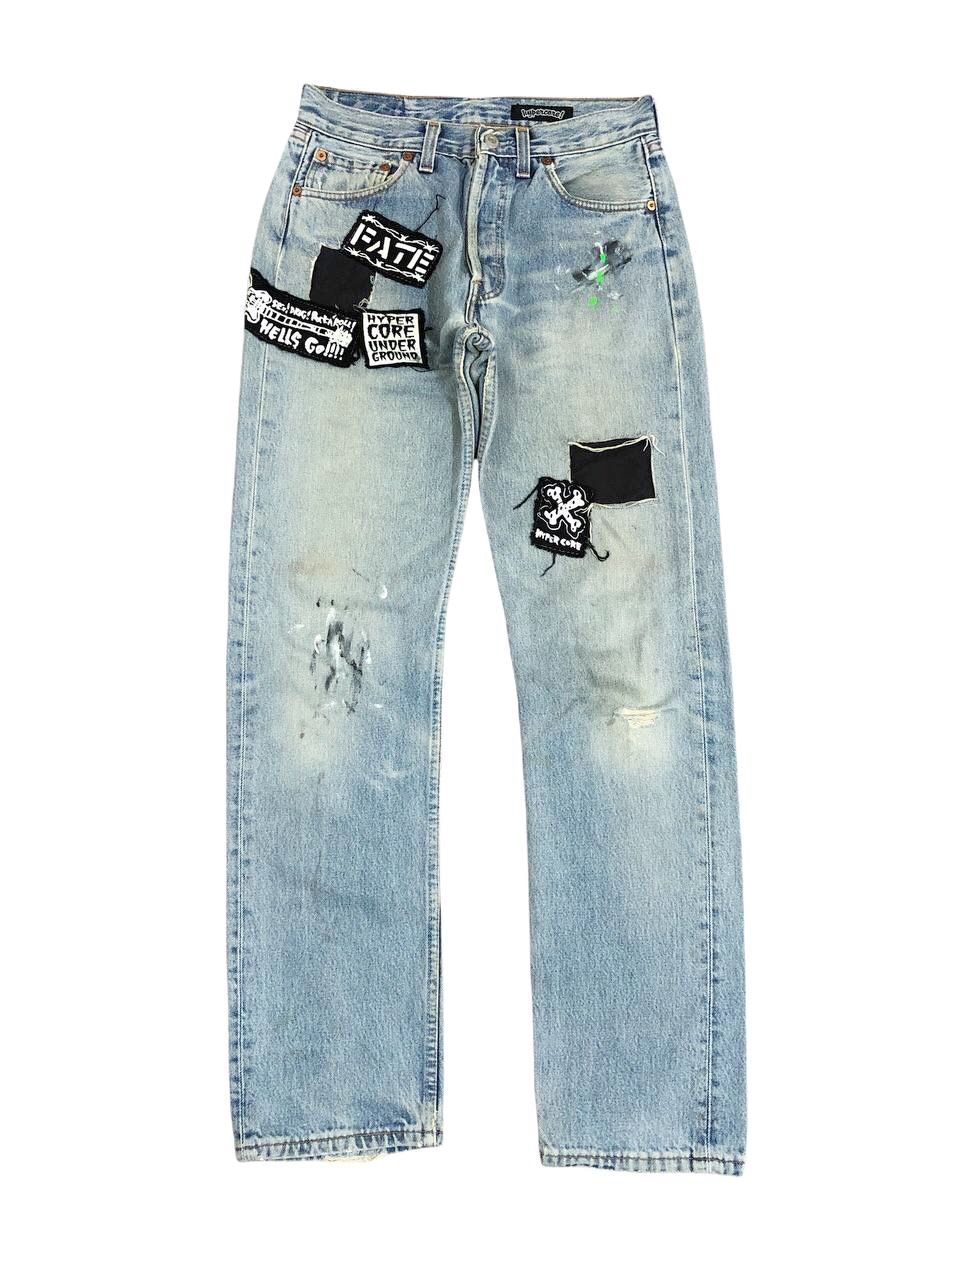 Vintage Vintage Levis Distressed Custom Patch Punk Jeans Size US 27 - 1 Preview